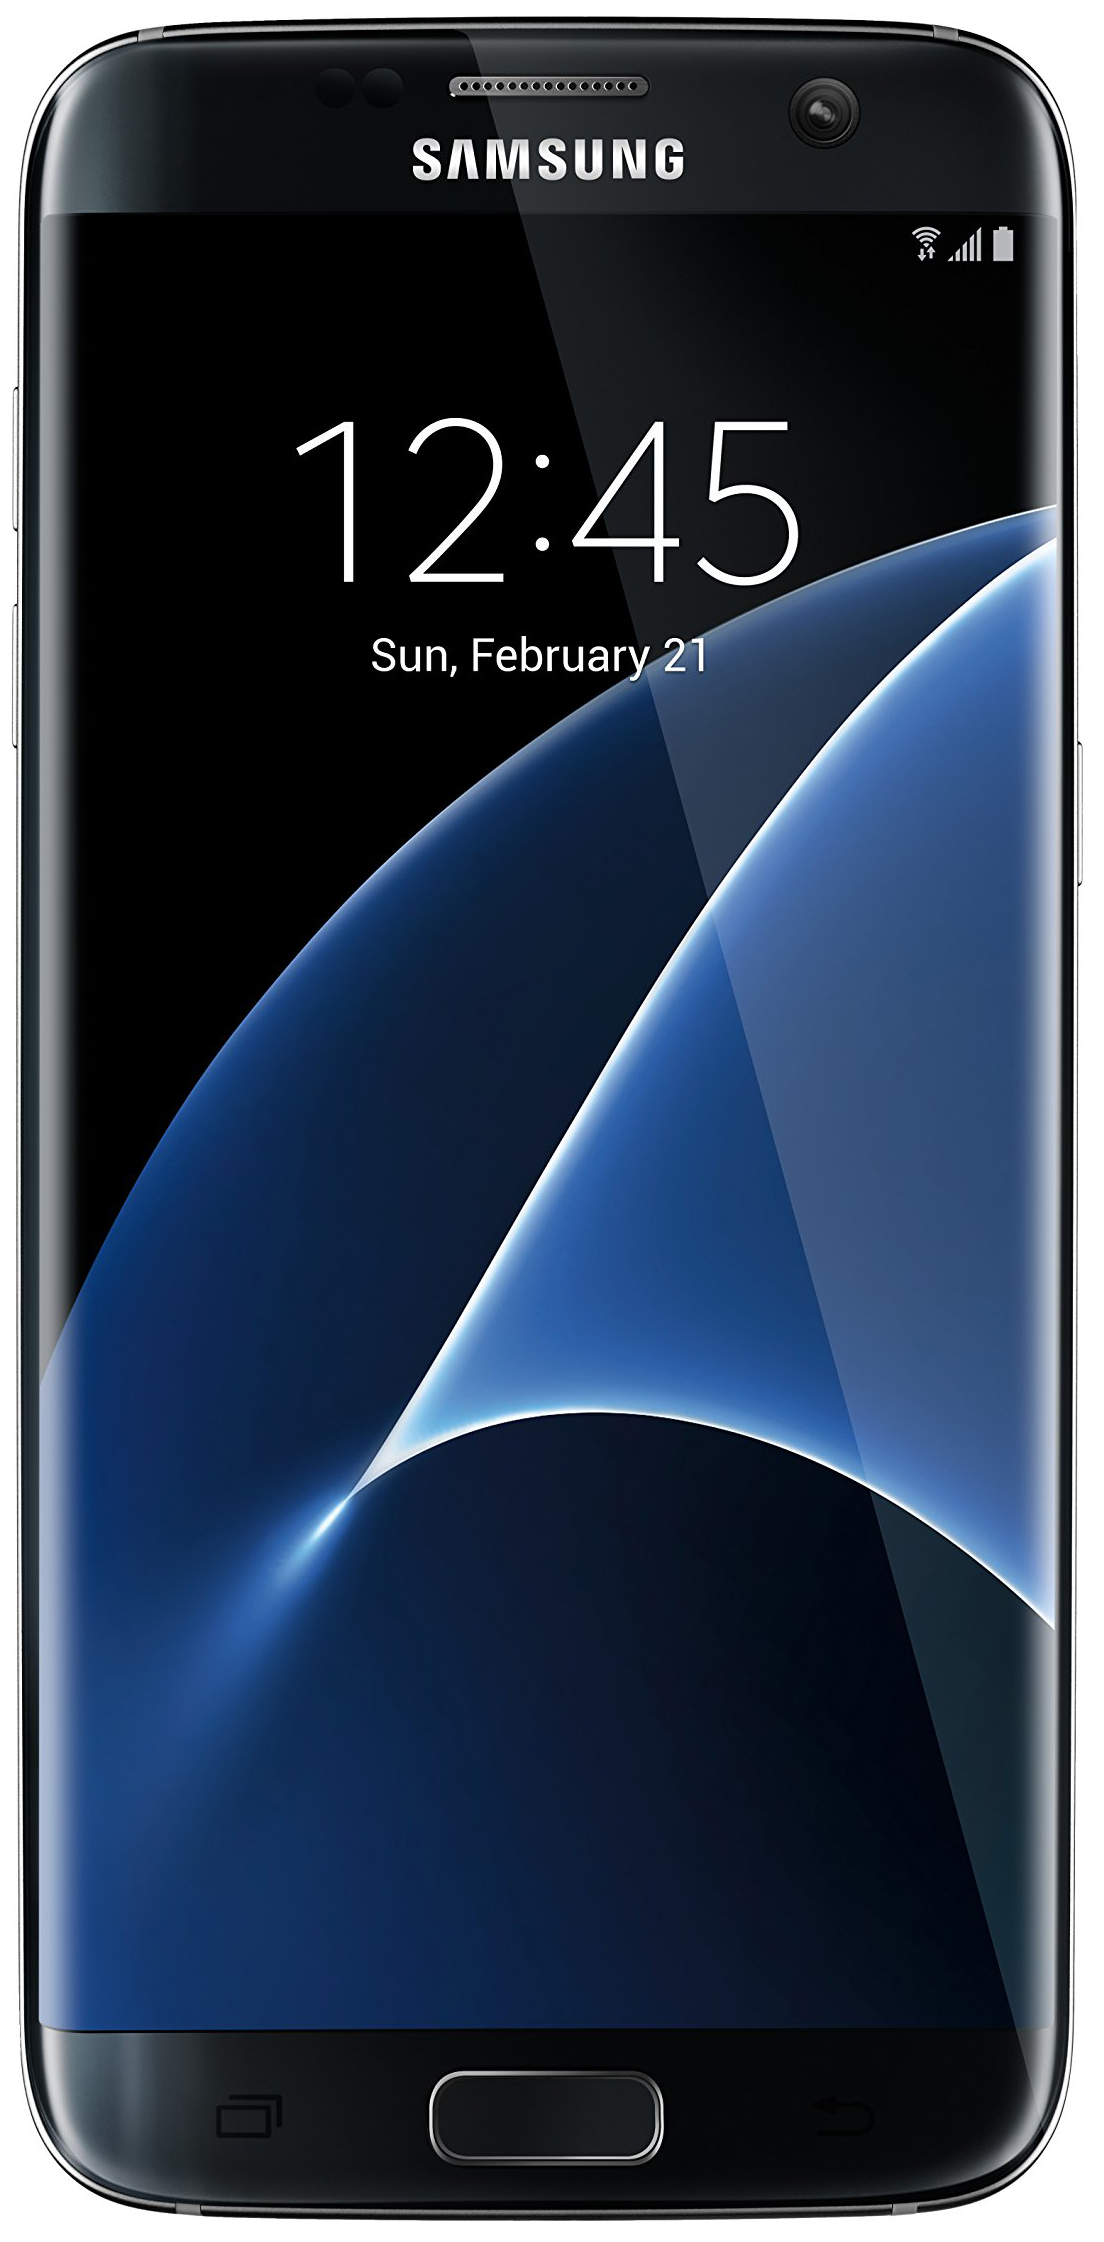 Samsung Galaxy S7 Edge: Bạn đang tìm kiếm một chiếc điện thoại cấu hình cao, thiết kế đẹp mắt và chất lượng màn hình tuyệt vời? Hãy thử xem hình ảnh về Samsung Galaxy S7 Edge để phát hiện ra những tính năng đáng kinh ngạc của chiếc smartphone này.